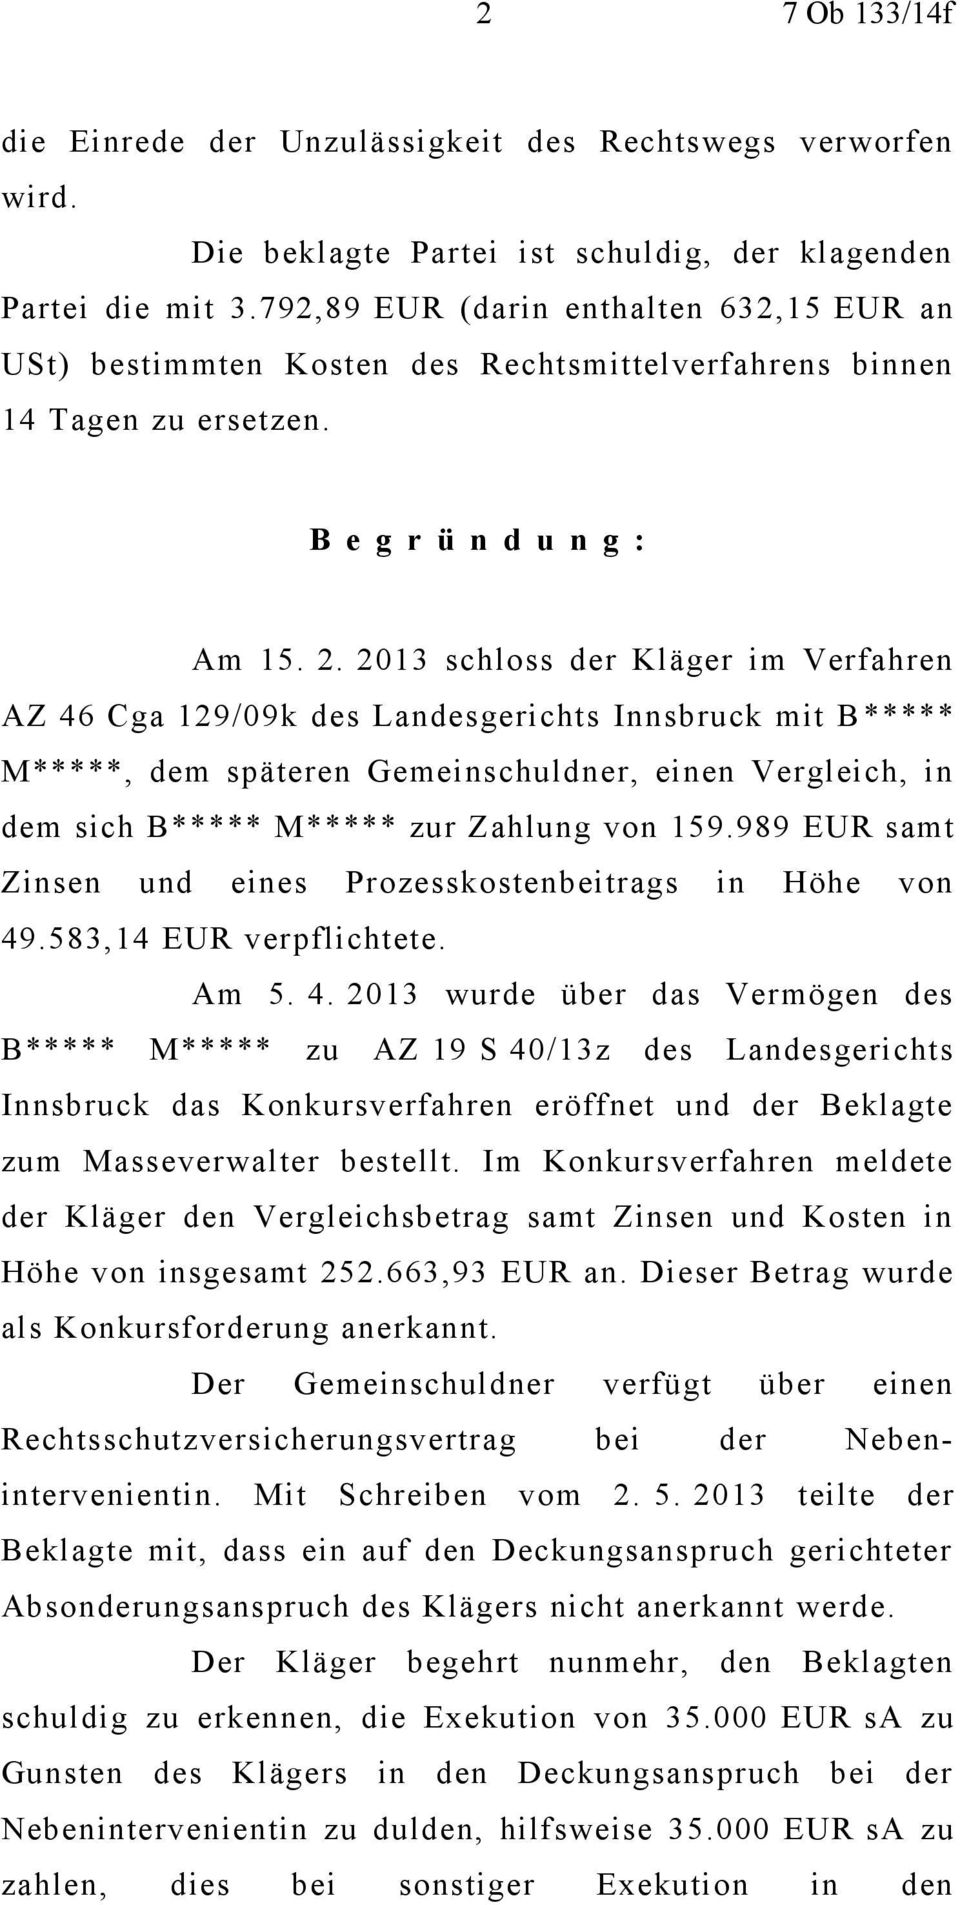 2013 schloss der Kläger im Verfahren AZ 46 Cga 129/09k des Landesgerichts Innsbruck mit B ***** M*****, dem späteren Gemeinschuldner, einen Vergleich, in dem sich B***** M***** zur Zahlung von 159.